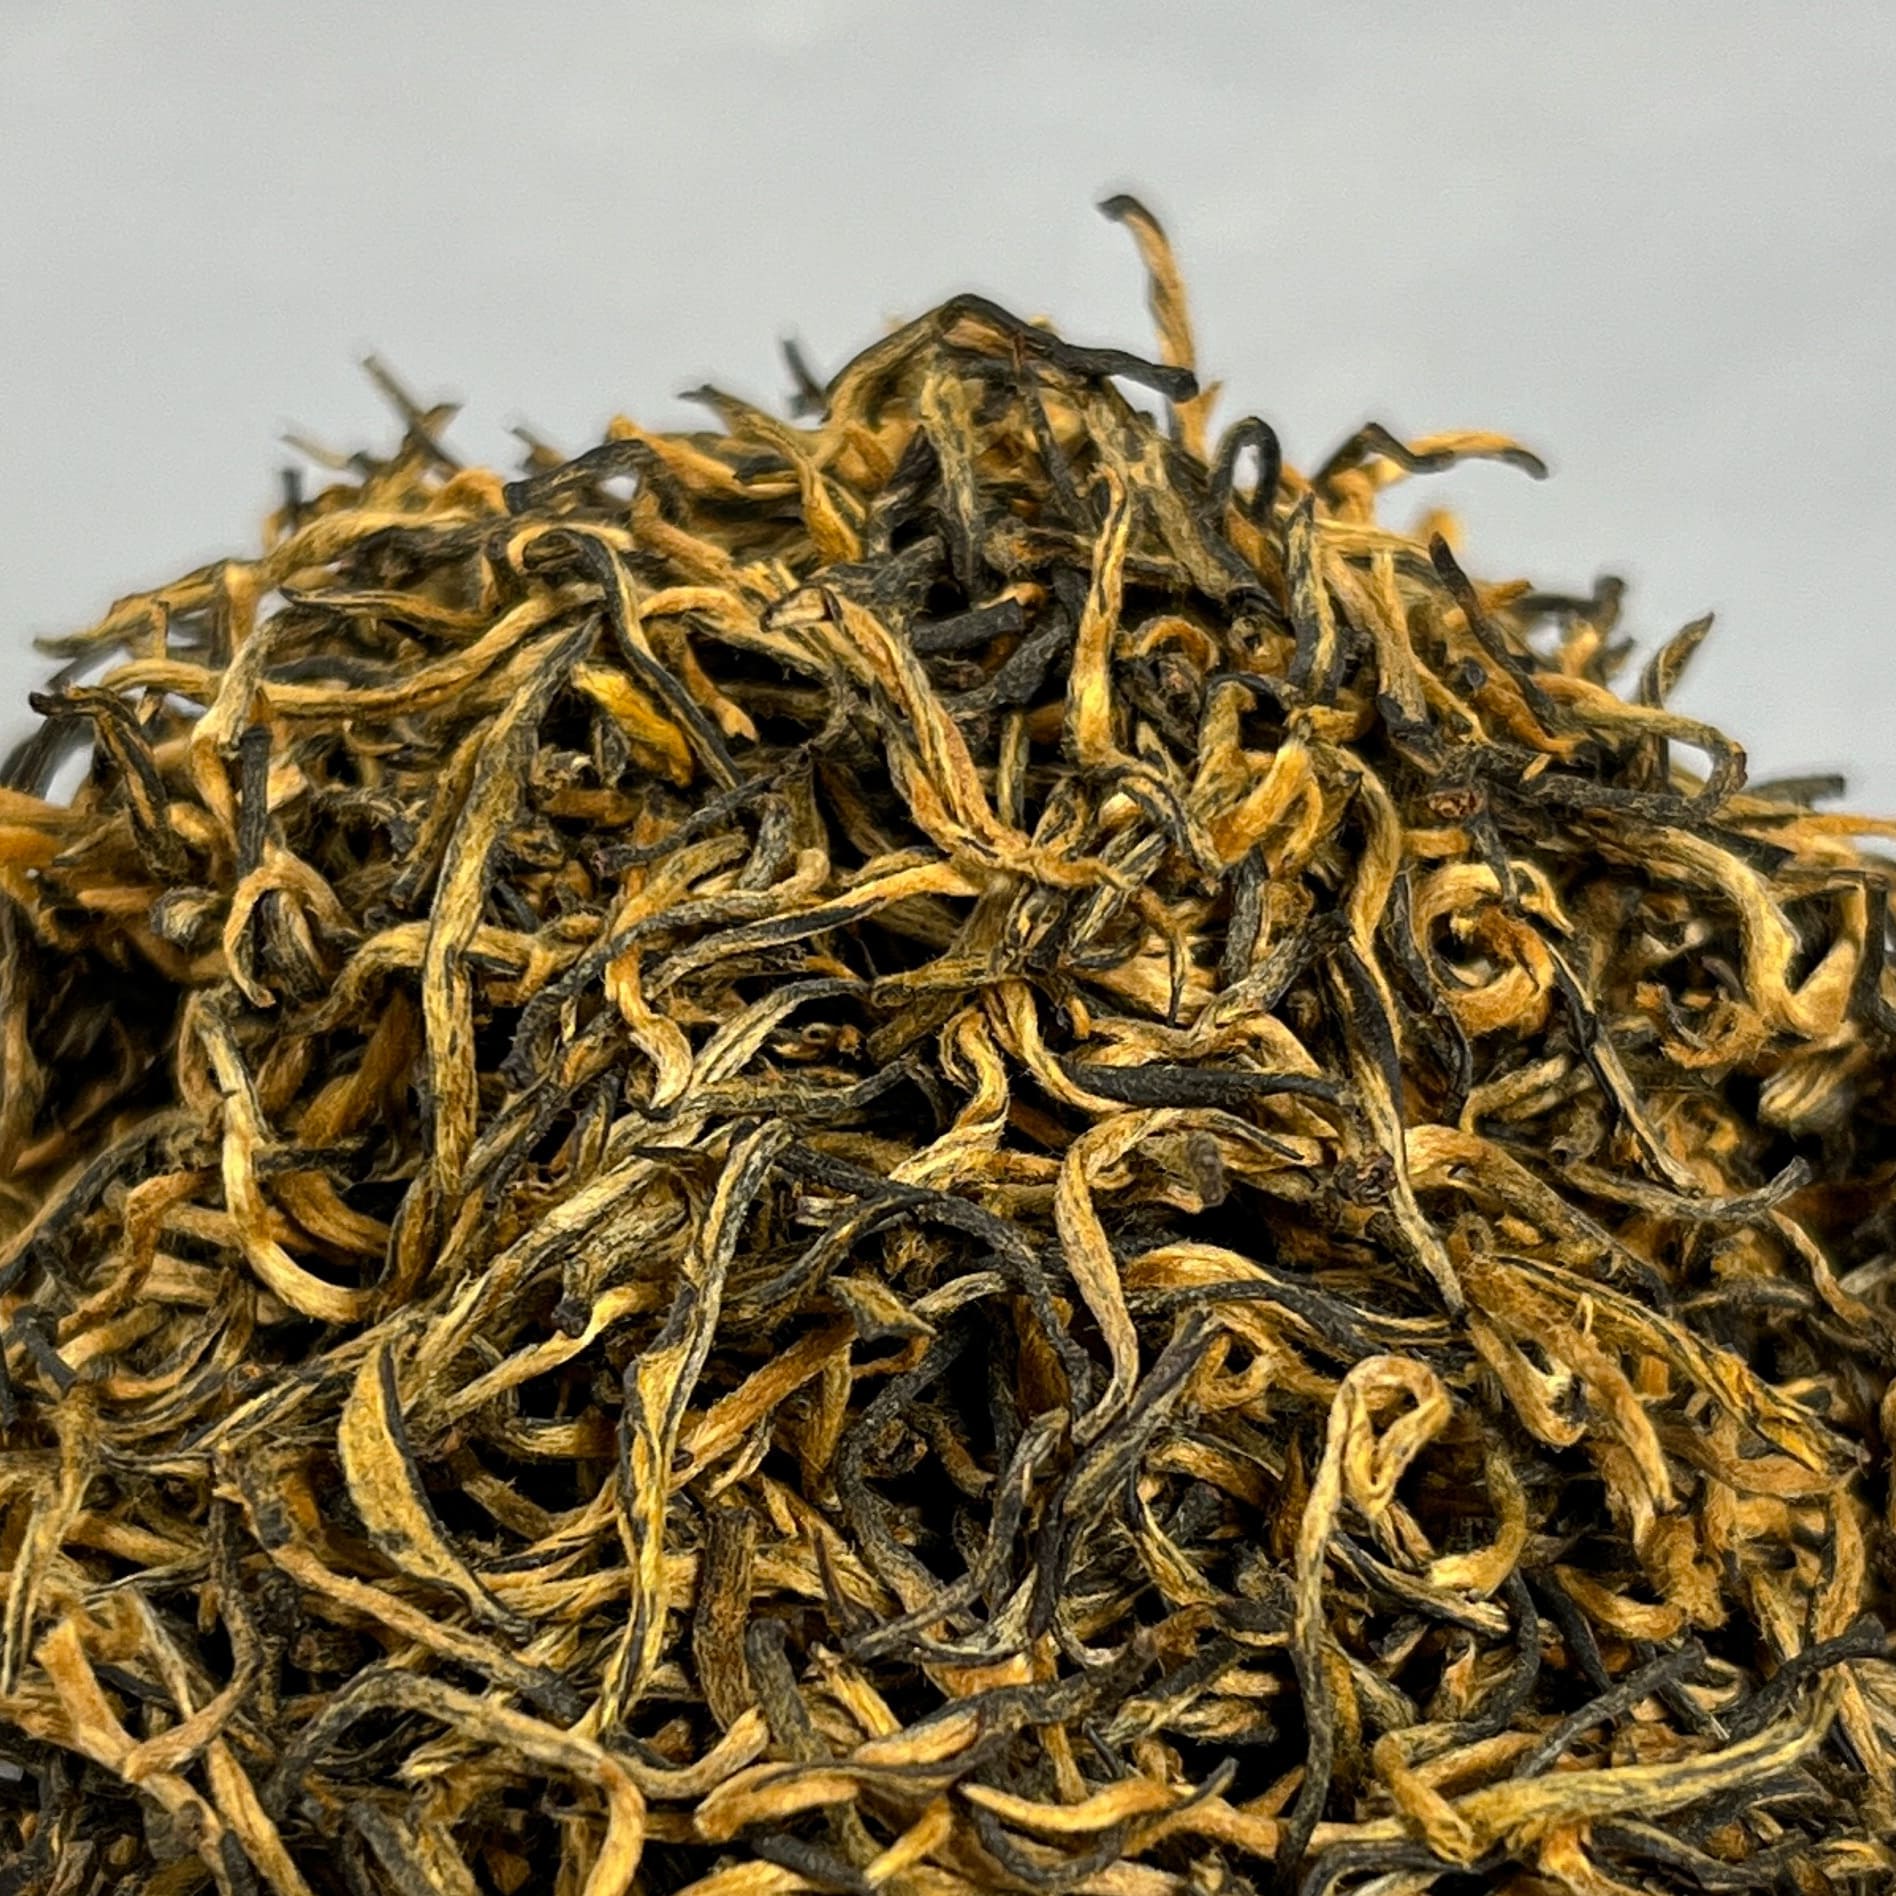 Цзинь Цзюнь Мэй - История красного чая Цзинь Цзюнь Мэй 金骏眉 - это относительно молодой сорт красного китайского чая, его разработал китайский технолог Лян Цзюньдэ в 2005 году. 